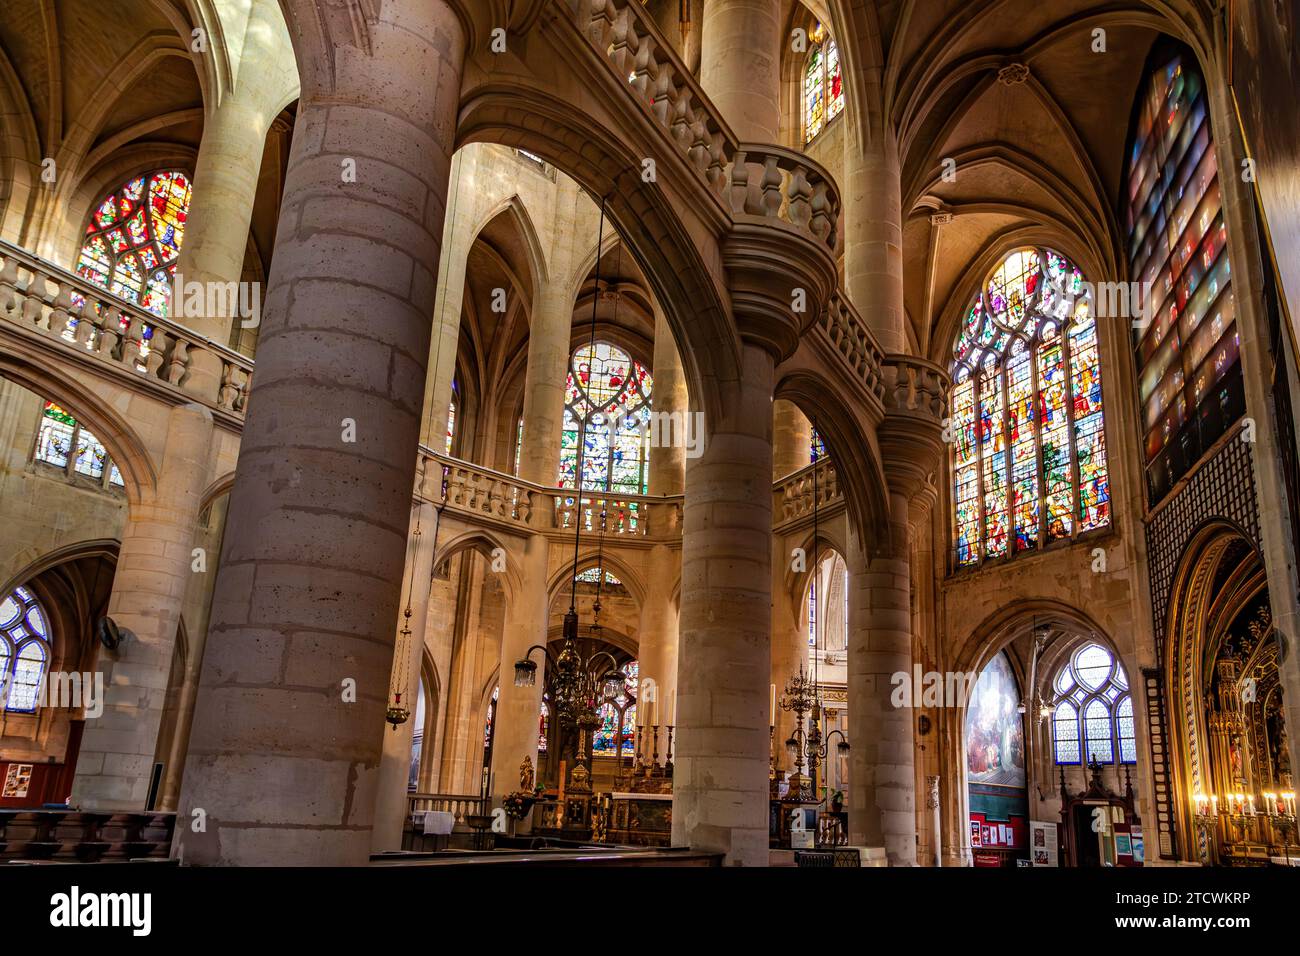 Voûtes de nef et vitraux à l'extrémité est de l'abside de Saint-Étienne-du-Mont, l'une des églises les plus belles de Paris, France Banque D'Images